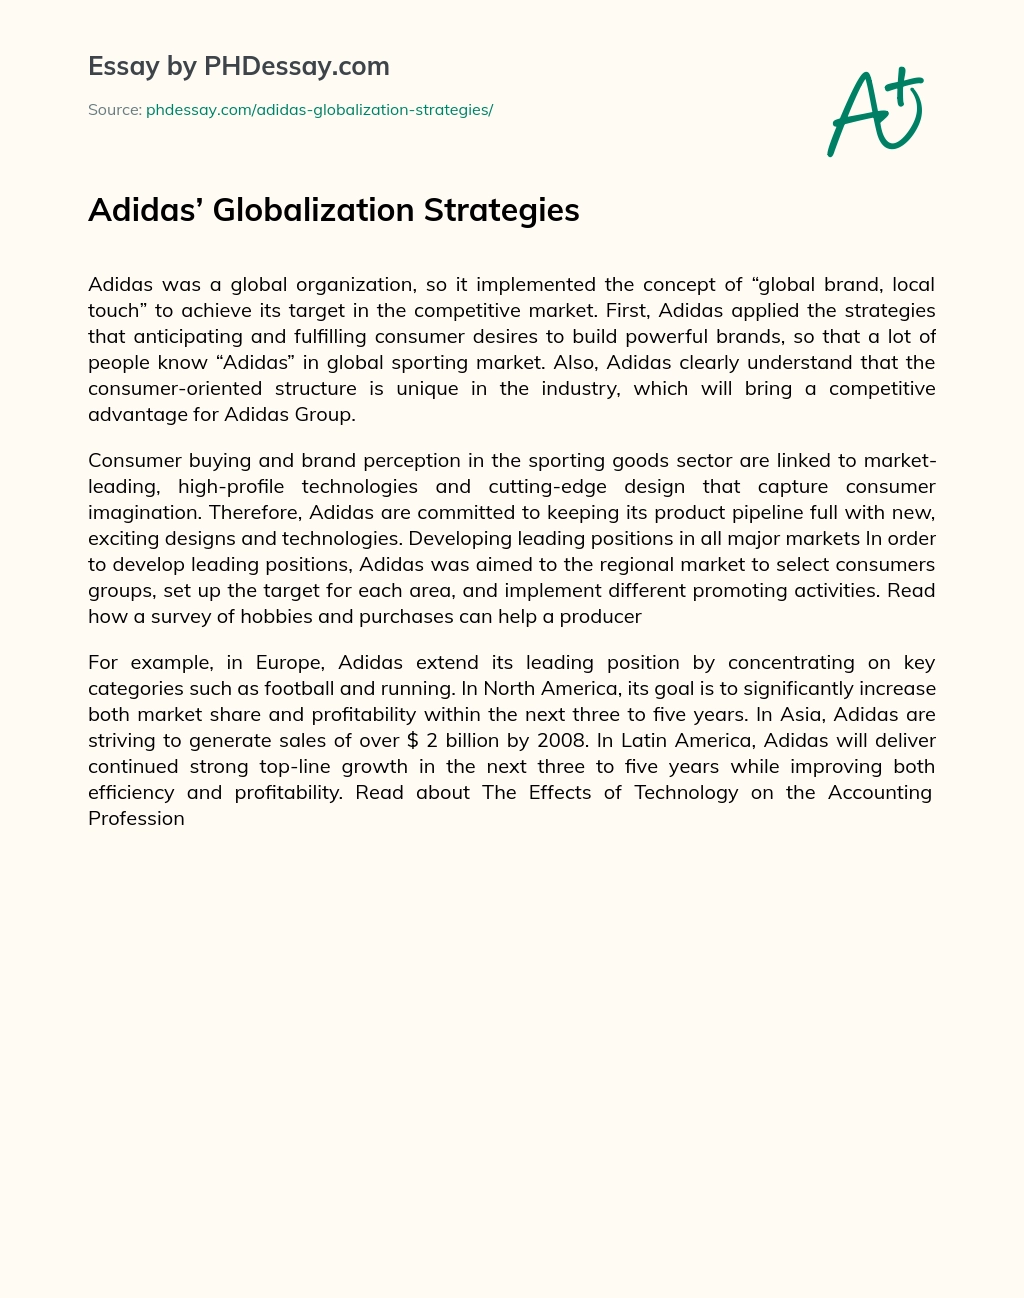 Adidas’ Globalization Strategies essay